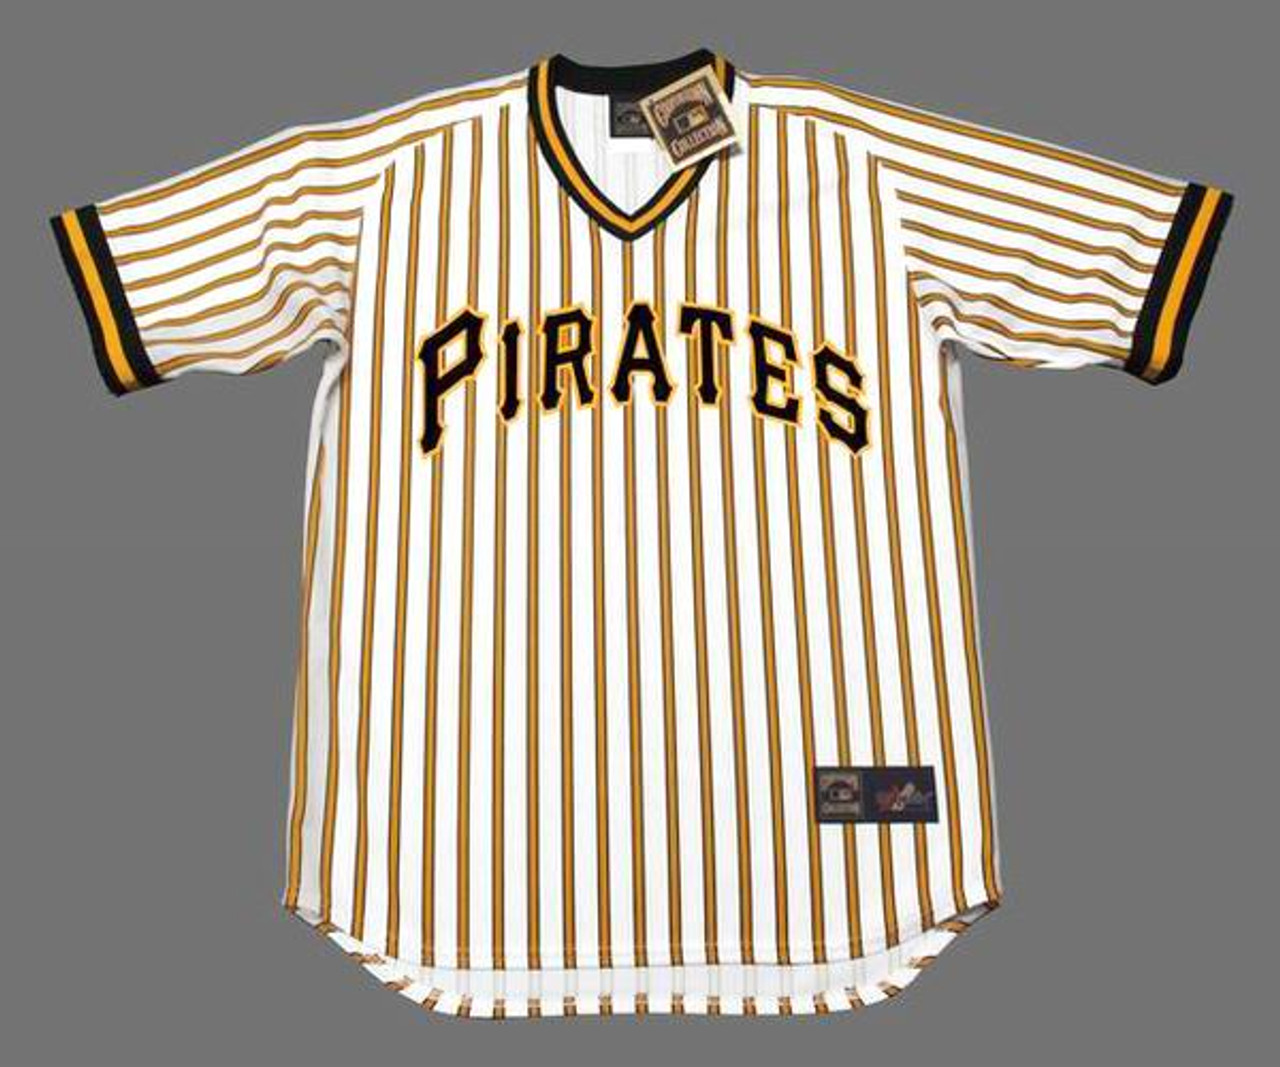 DOCK ELLIS  Pittsburgh Pirates 1969 Home Majestic Throwback Baseball Jersey